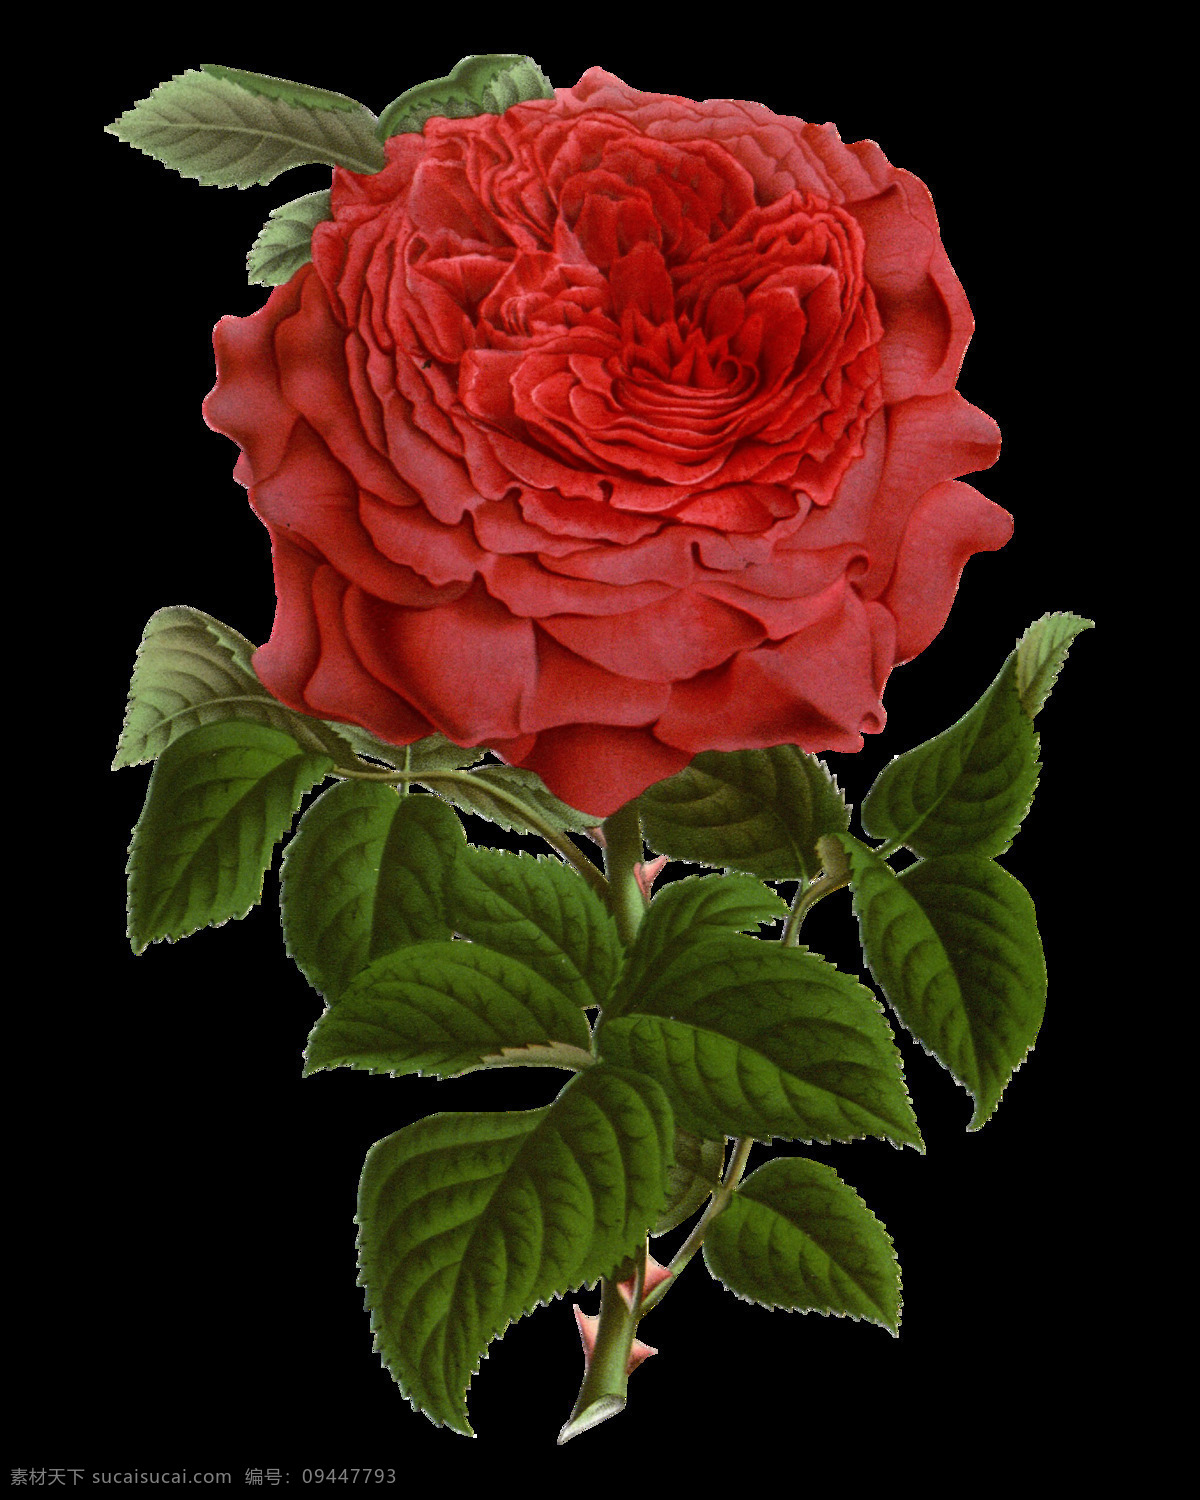 时尚 红色 花朵 装饰 元素 含苞待放 梦幻花朵 手绘花朵素材 鲜花花朵 鲜花花蕾 鲜花素材花卉